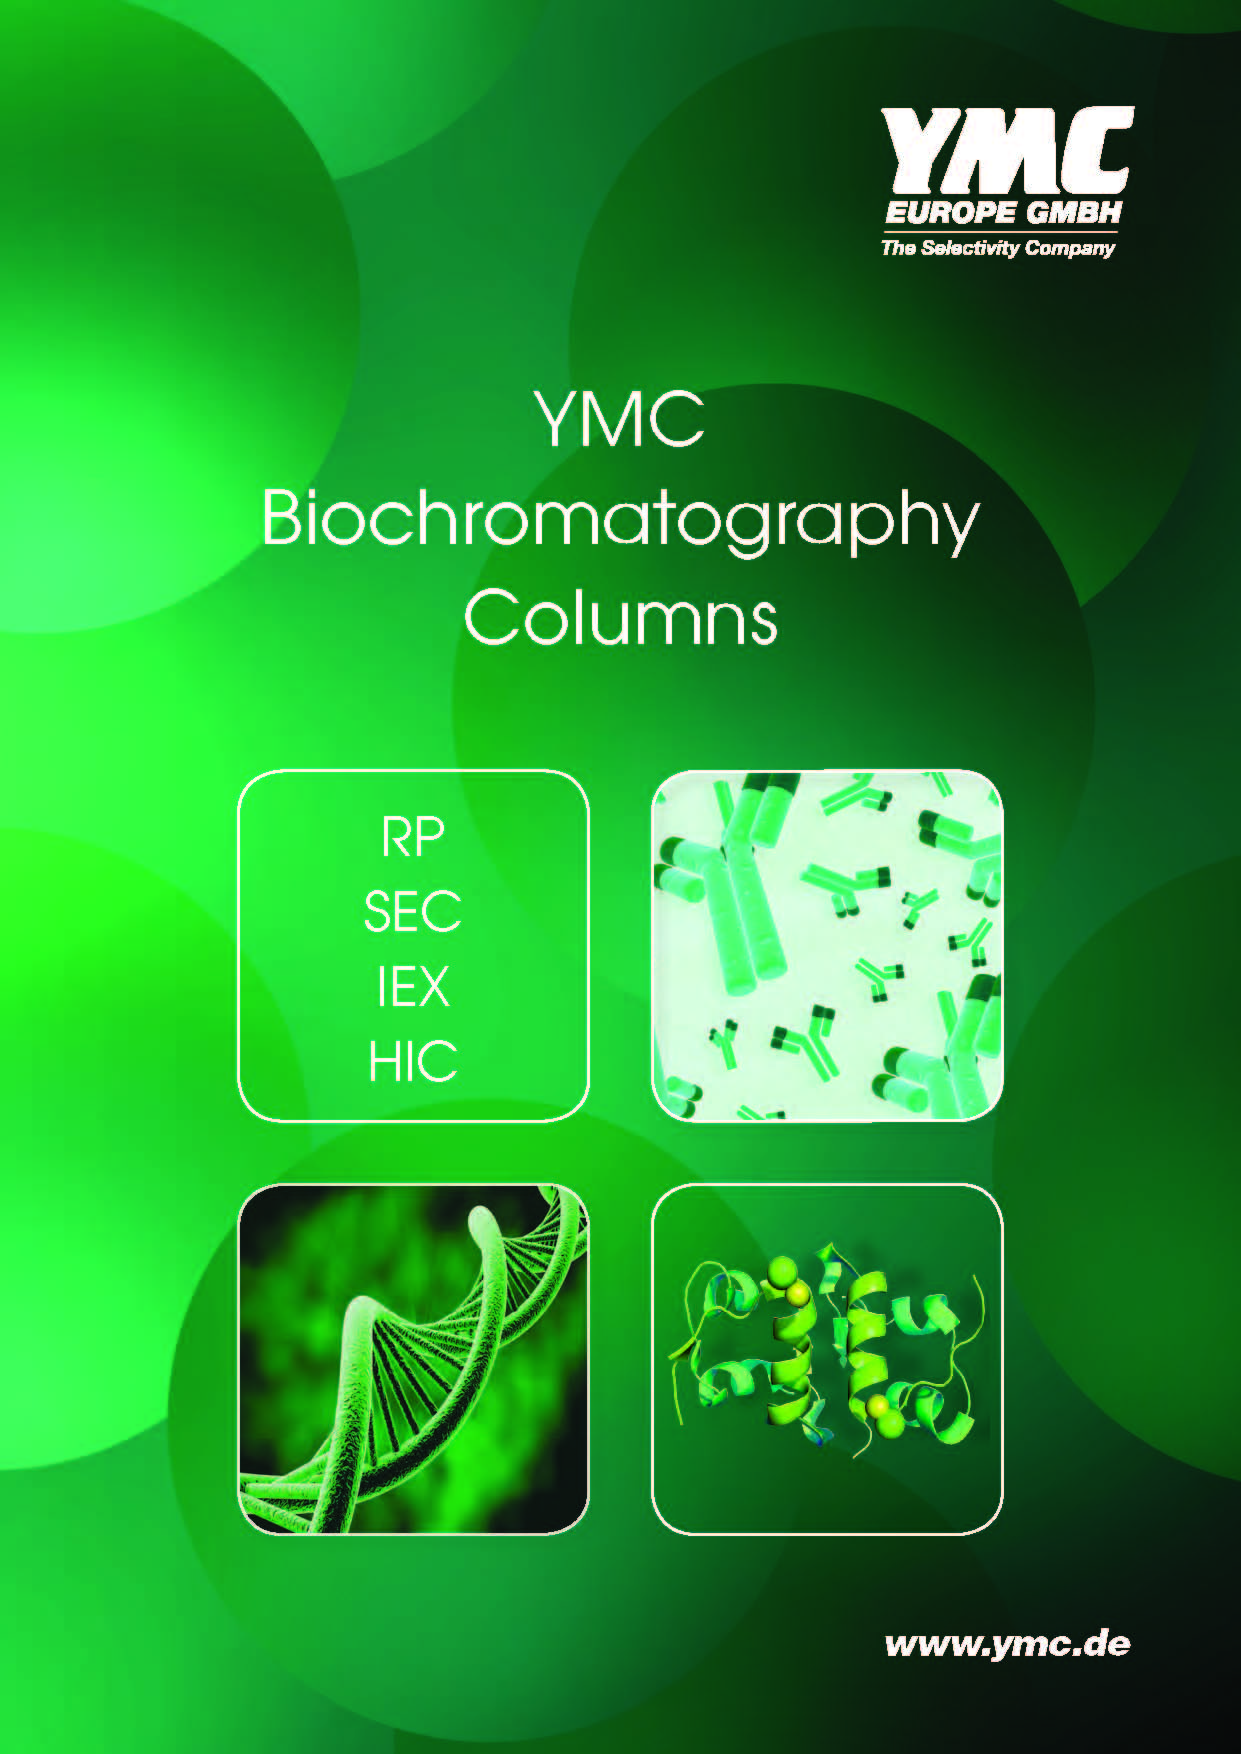 YMC fáze pro Biochromatografii